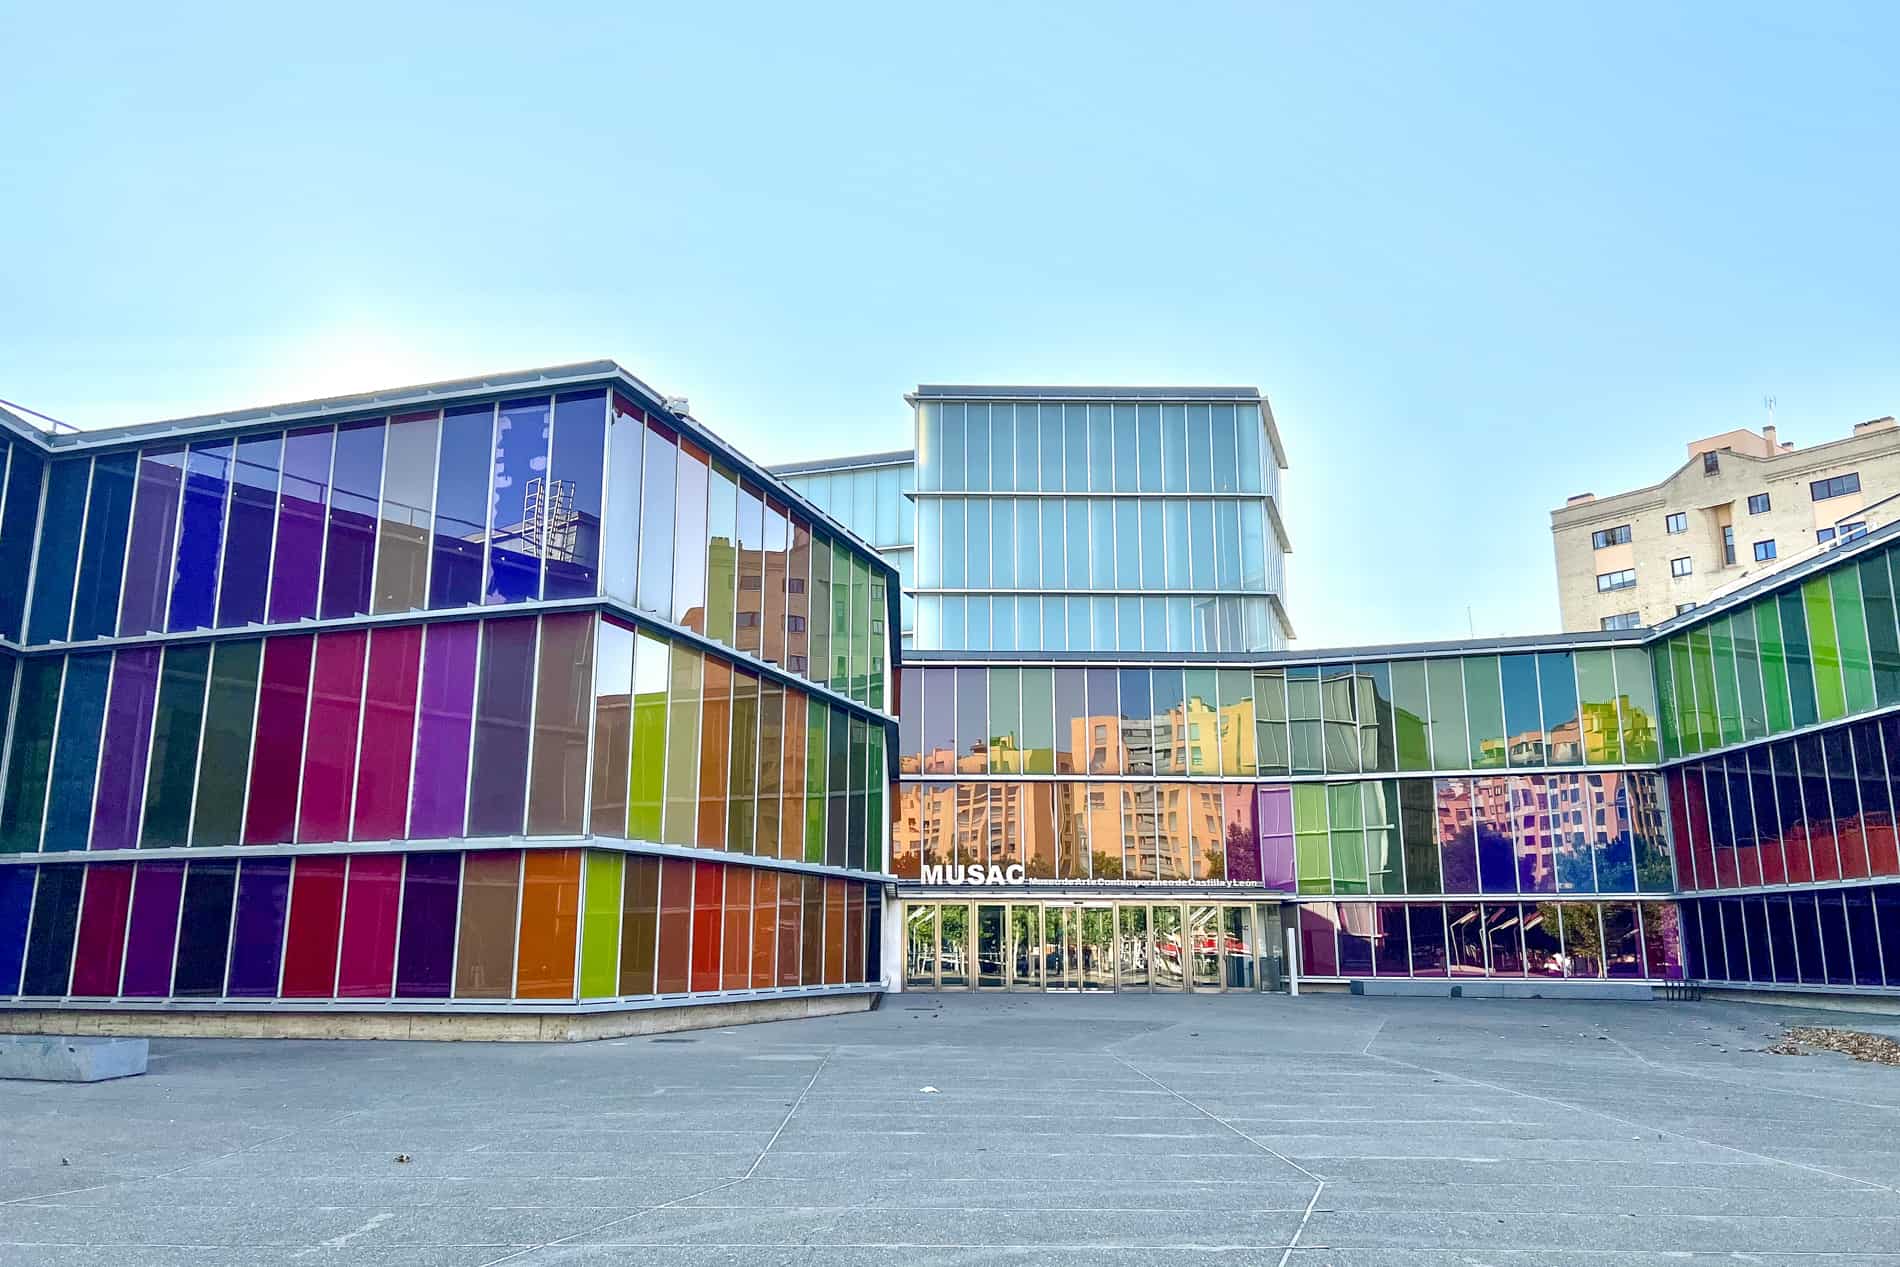 La fachada de paneles de vidrio multicolor del Museo de Arte Contemporáneo (MUSAC) de León.